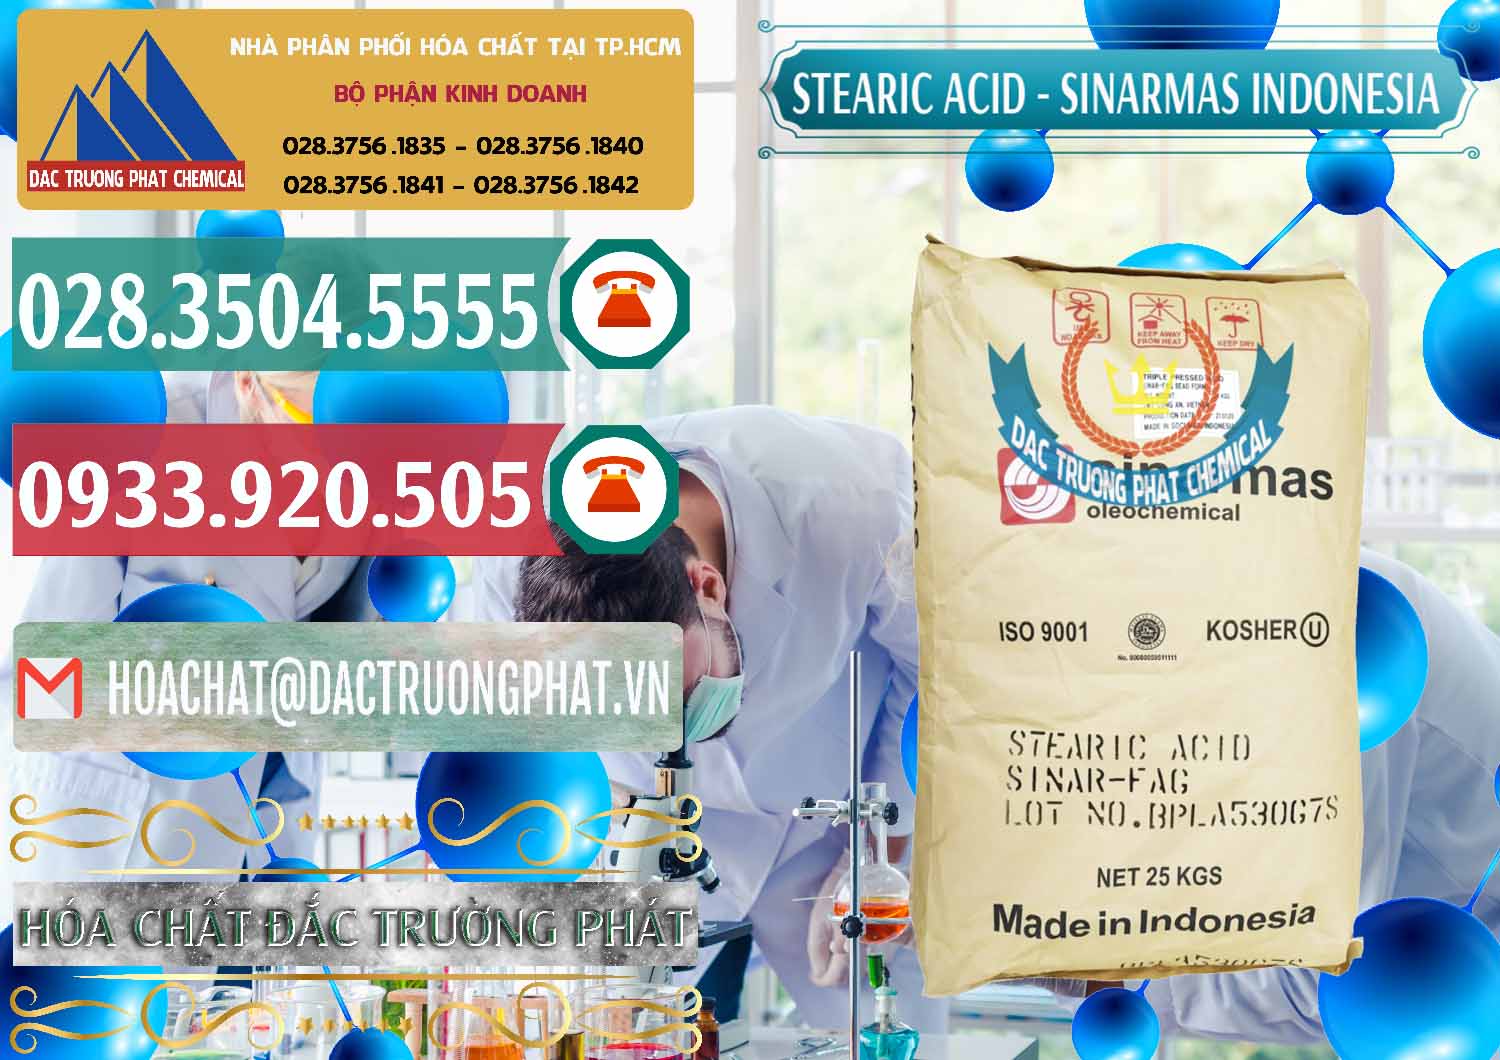 Cung ứng ( bán ) Axit Stearic - Stearic Acid Sinarmas Indonesia - 0389 - Cty cung ứng & phân phối hóa chất tại TP.HCM - muabanhoachat.vn